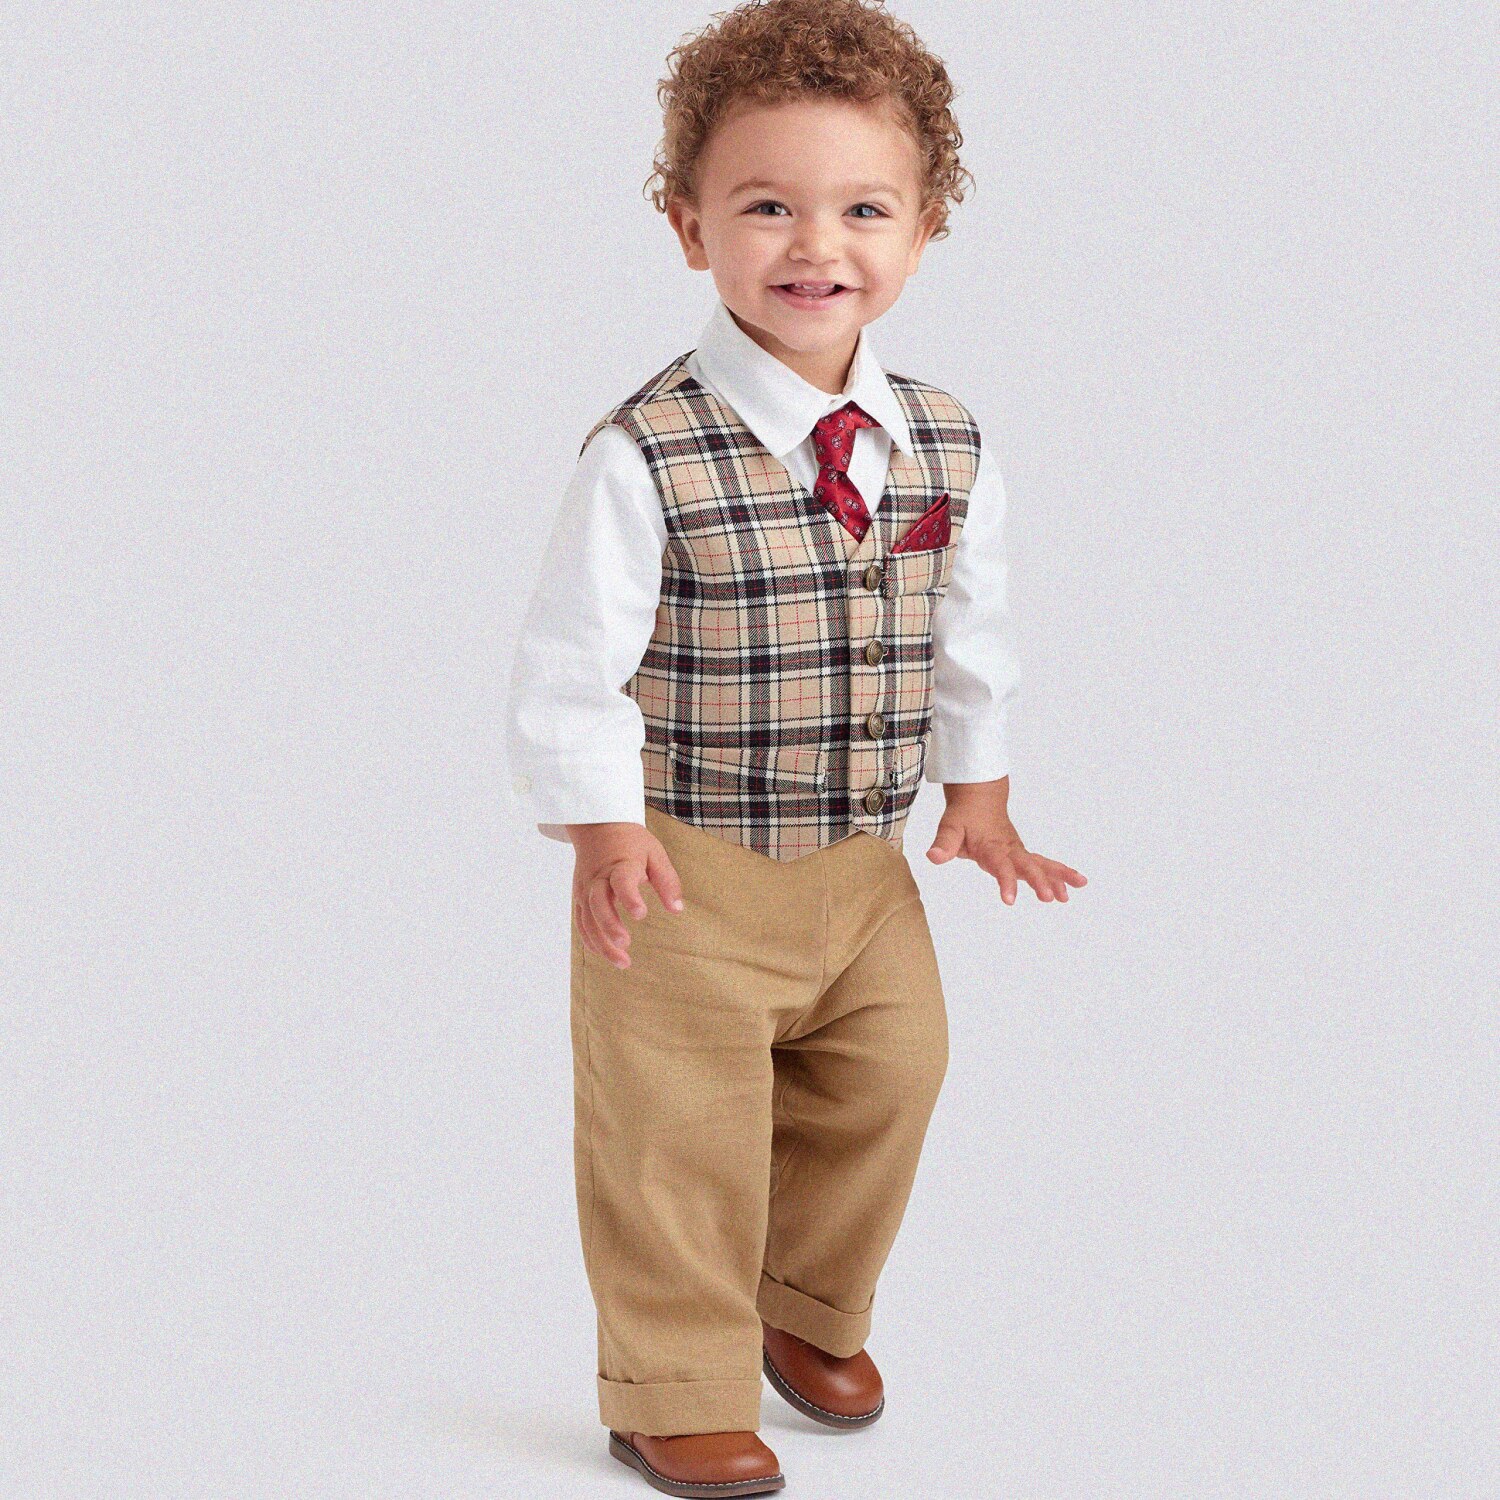 TinyTailor Kit: Infants' Vest, Shirt, Shorts, Pants, Tie & Pocket Square (Sizes: XXS-XS-S-M-L)